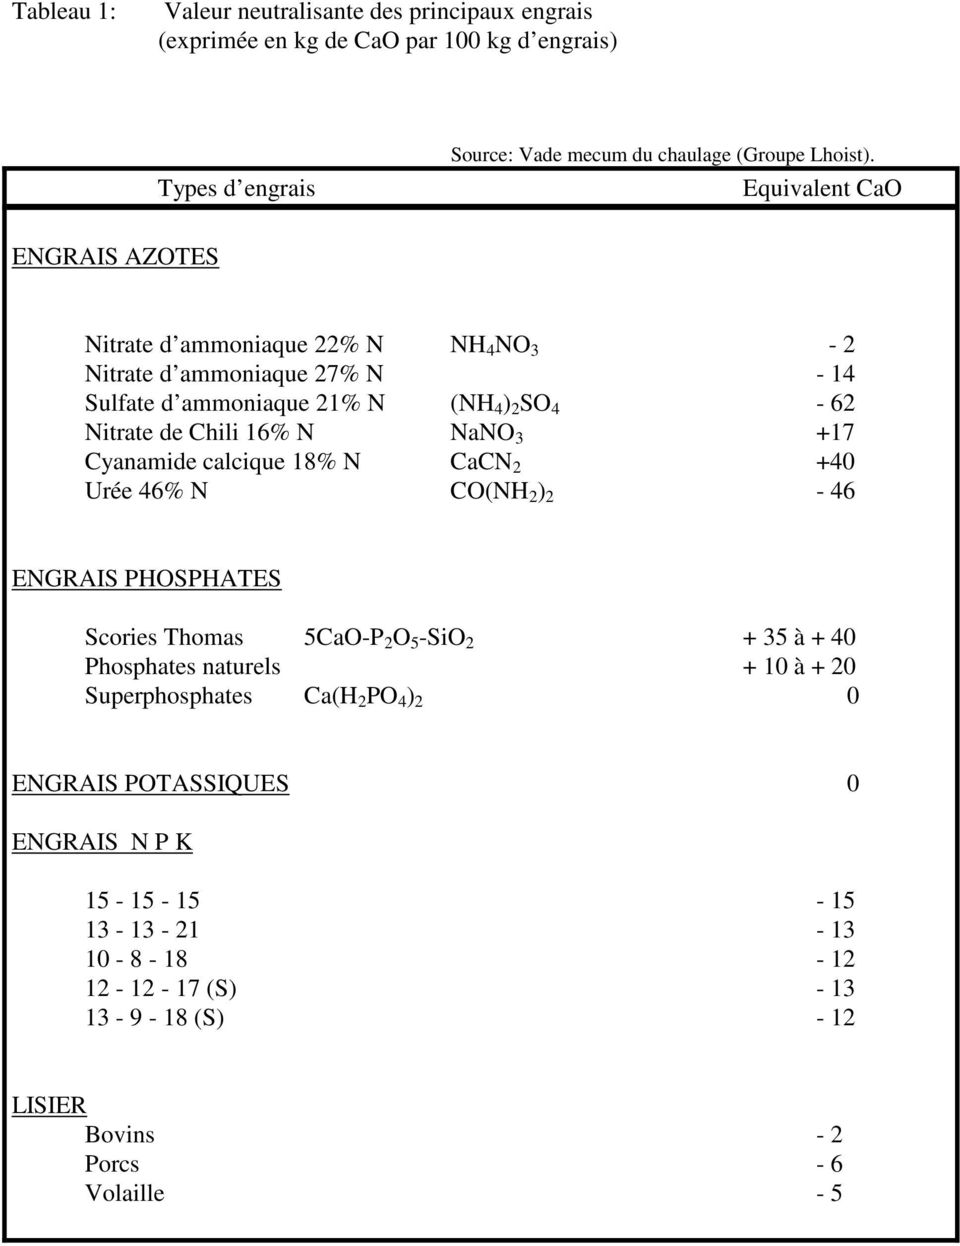 3 +17 Cyanamide calcique 18% N CaCN 2 +40 Urée 46% N CO(NH 2 ) 2-46 ENGRAIS PHOSPHATES Scories Thomas 5CaO-P 2 O 5 -SiO 2 + 35 à + 40 Phosphates naturels + 10 à + 20